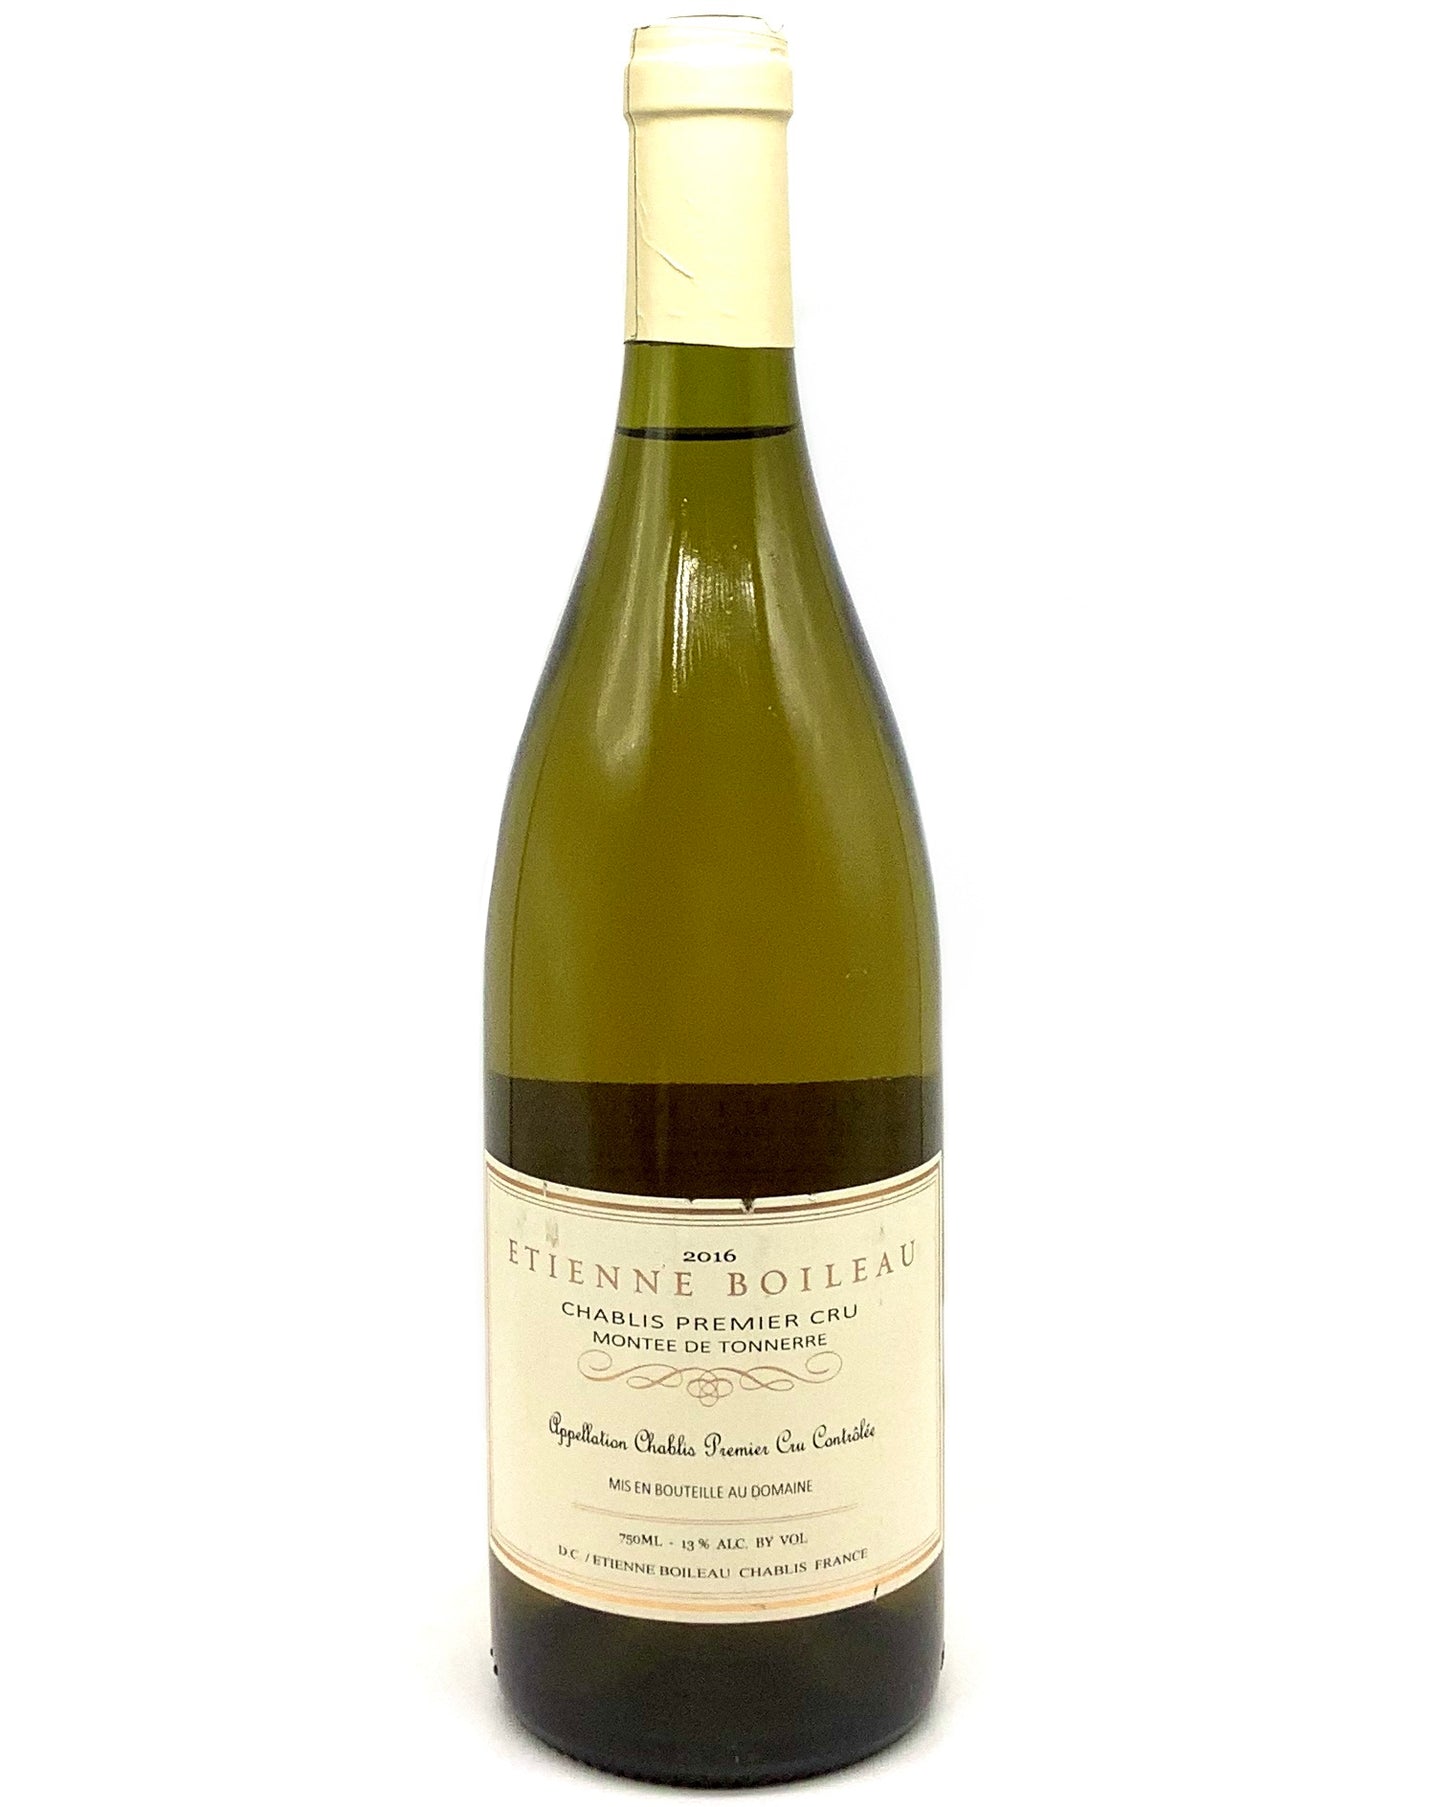 Etienne Boileau, Chardonnay, Chablis 1er Cru Montée de Tonnerre, Burgundy 2016